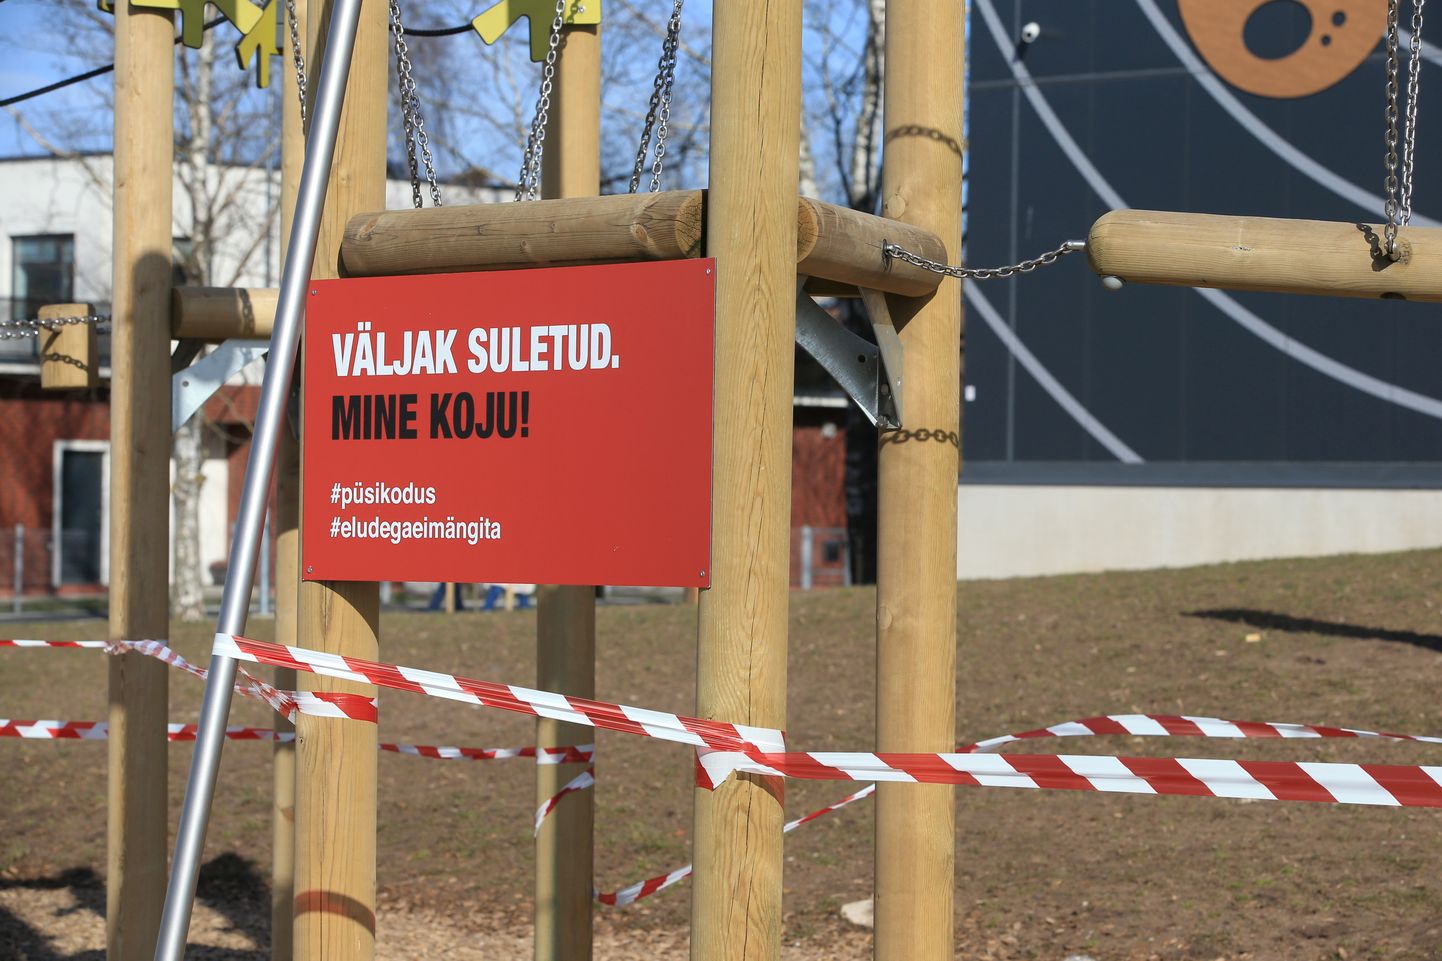 Eestis kehtestatud eriolukorra tõttu suleti avalikud spordi- ja mänguväljakud. Variku spordiväljakul olid keelust hoolimata tegevuses kolm noormeest, kellest kaks lahkusid fotograafi nähes. Pildil väljaku sulgemisest teavitav silt.